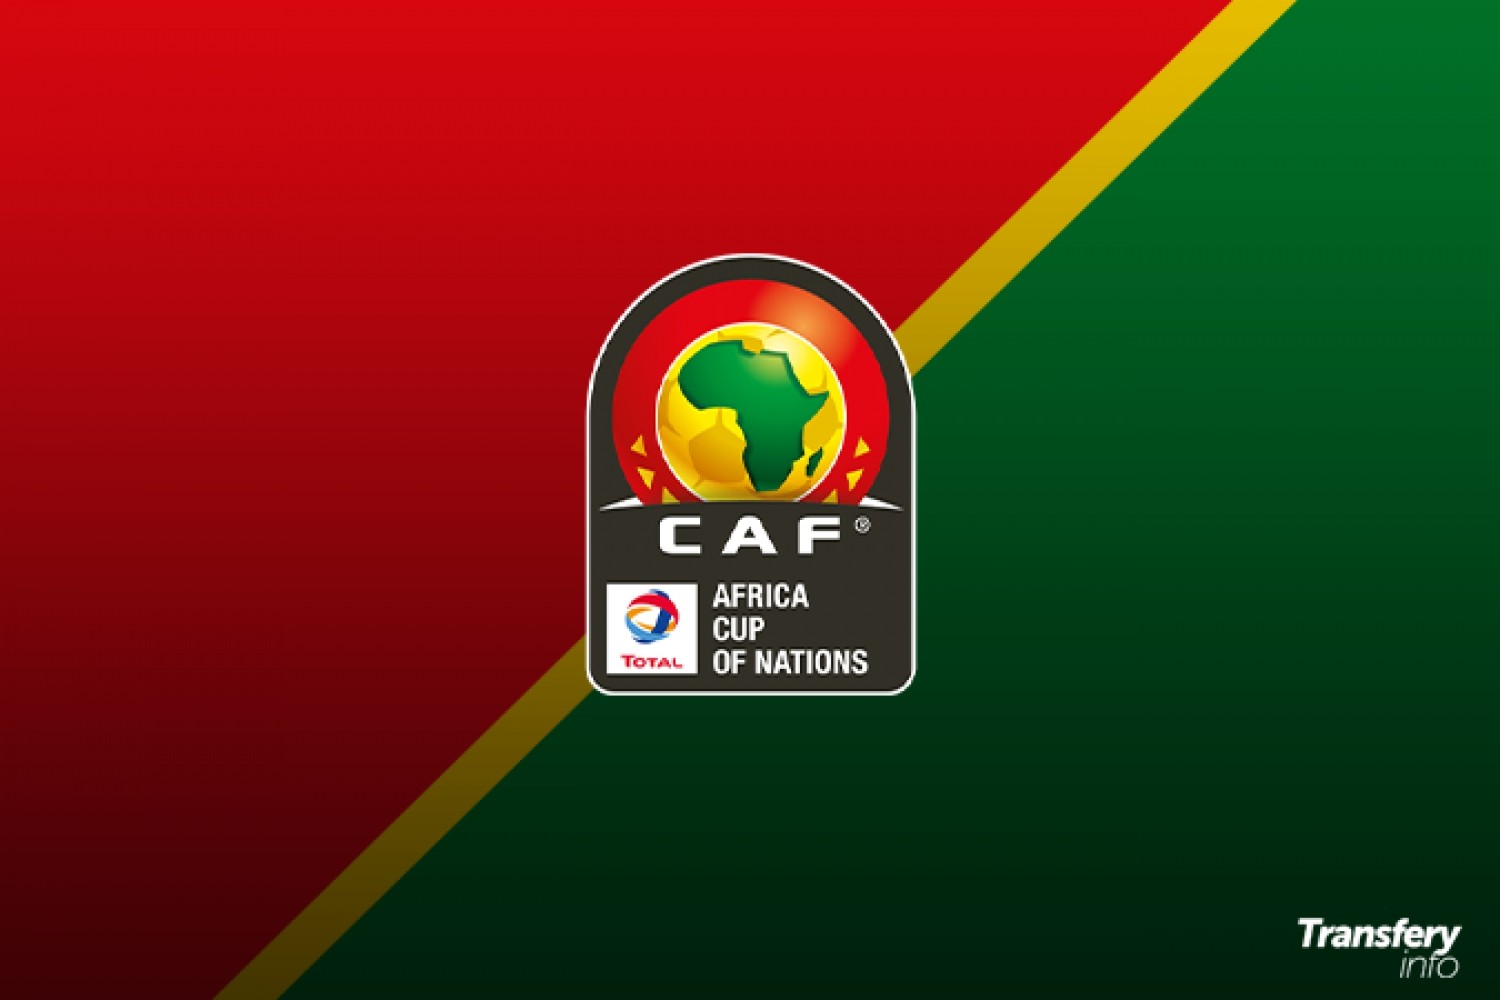 OFICJALNIE: Blamaż na Pucharze Narodów Afryki wywołuje konsekwencje. TRZECI selekcjoner czołowej reprezentacji zwolniony